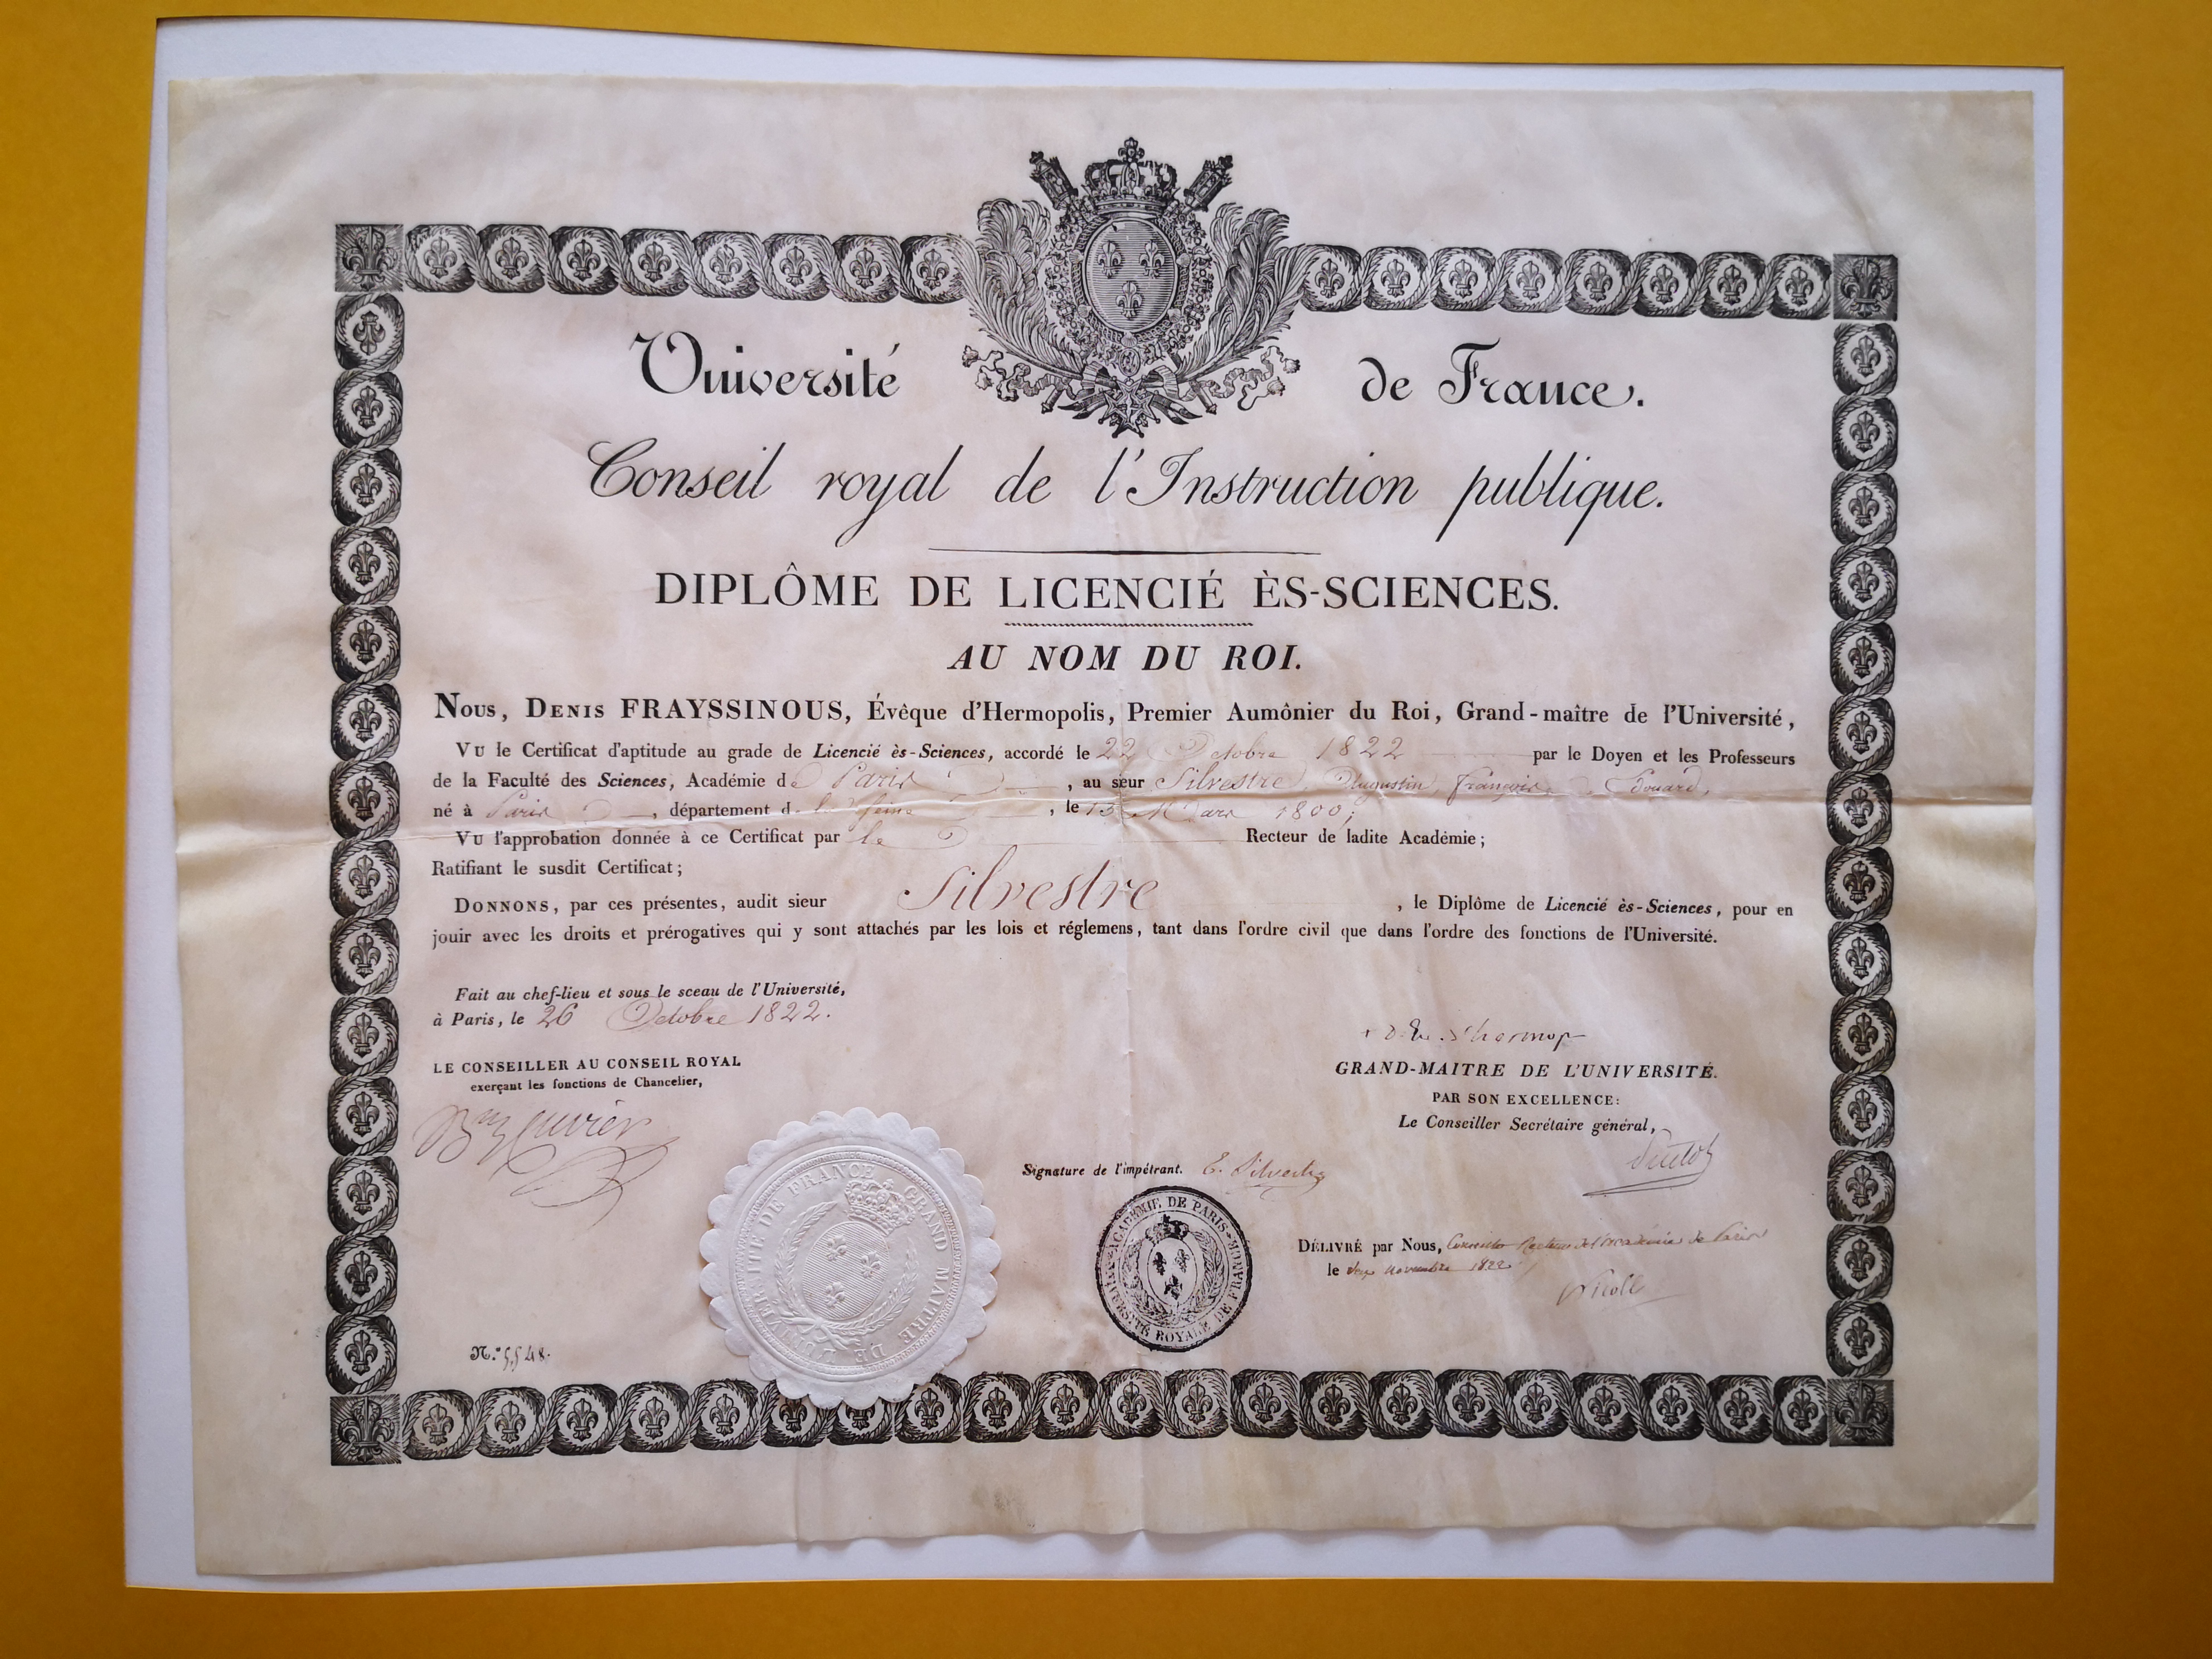  Diplôme de licencié ès sciences - Document 1